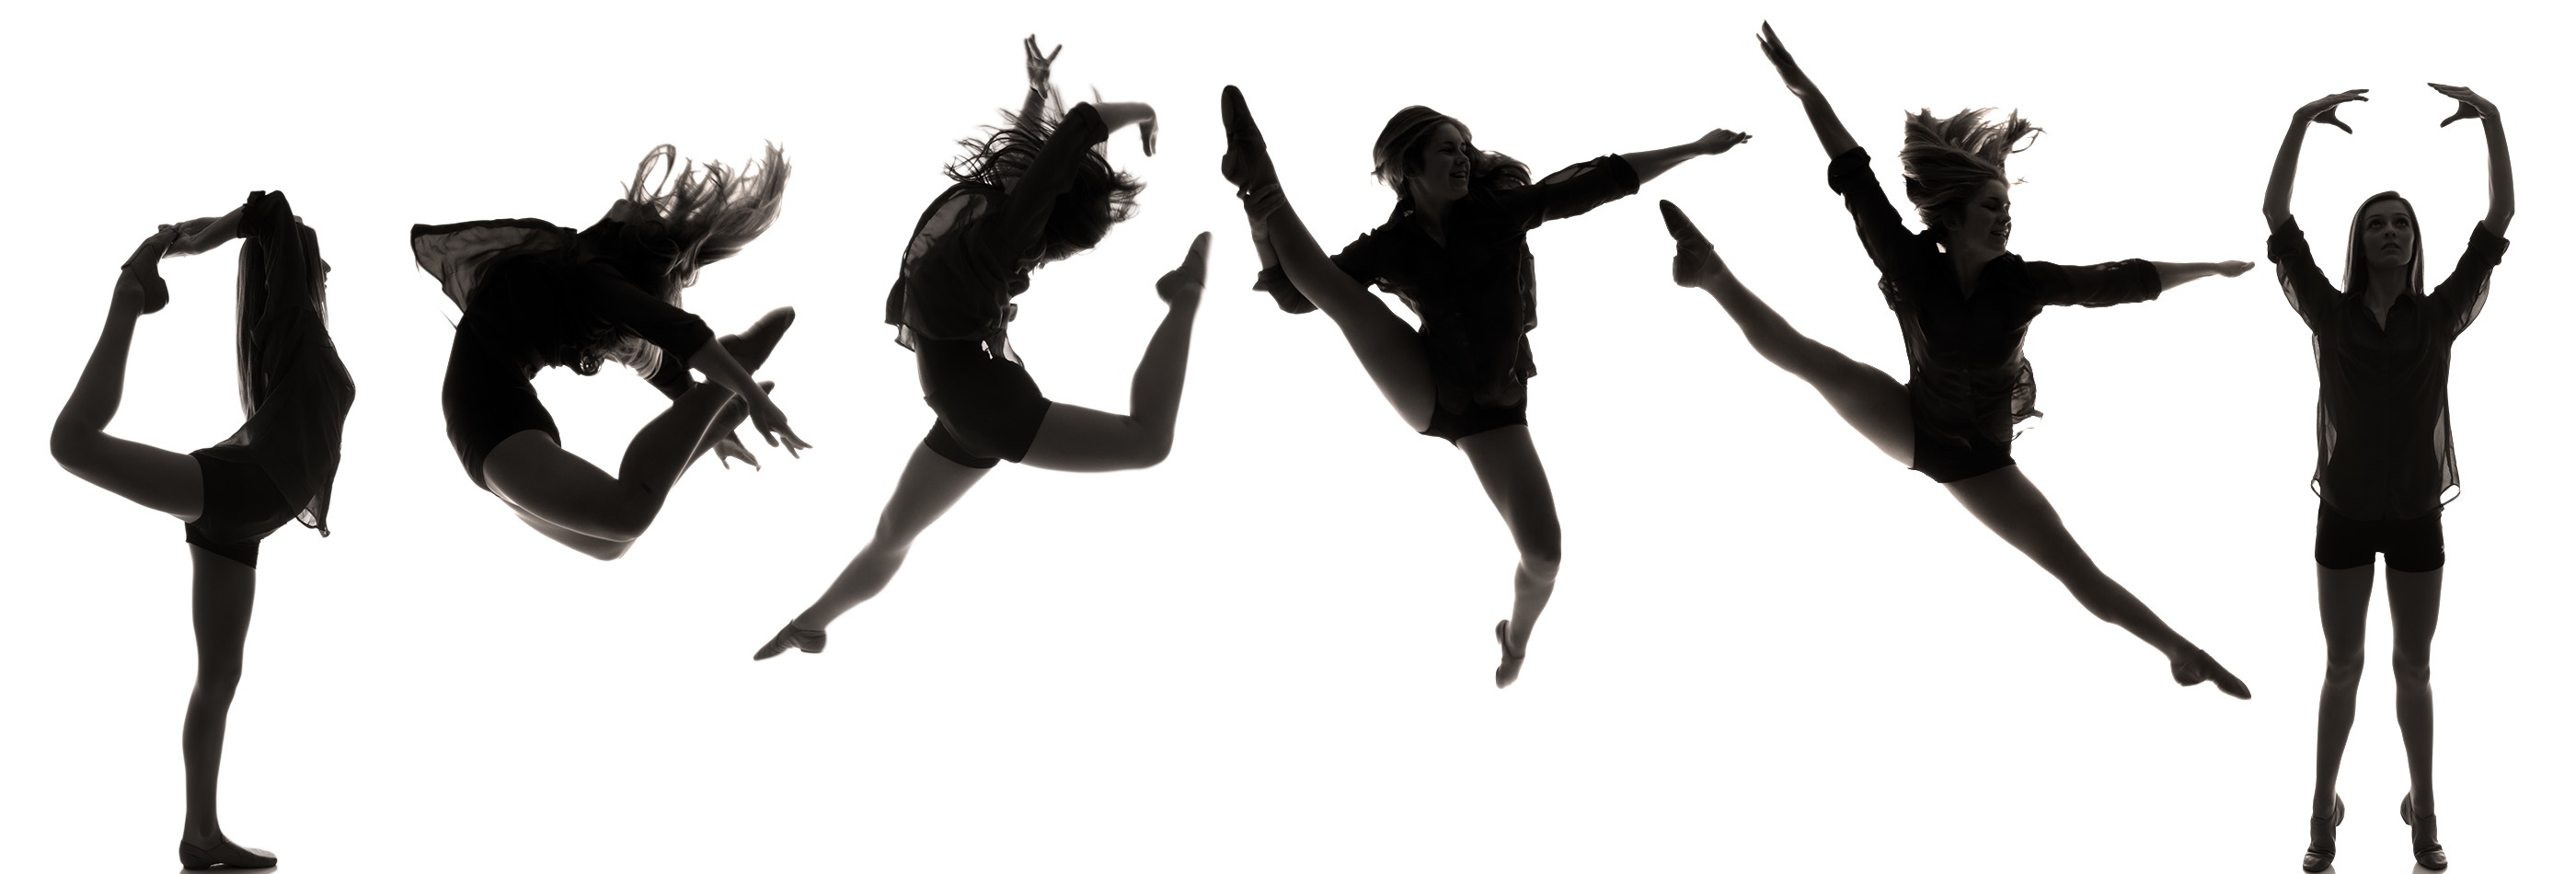 Dance Team Silhouette Hd Photos Clipart